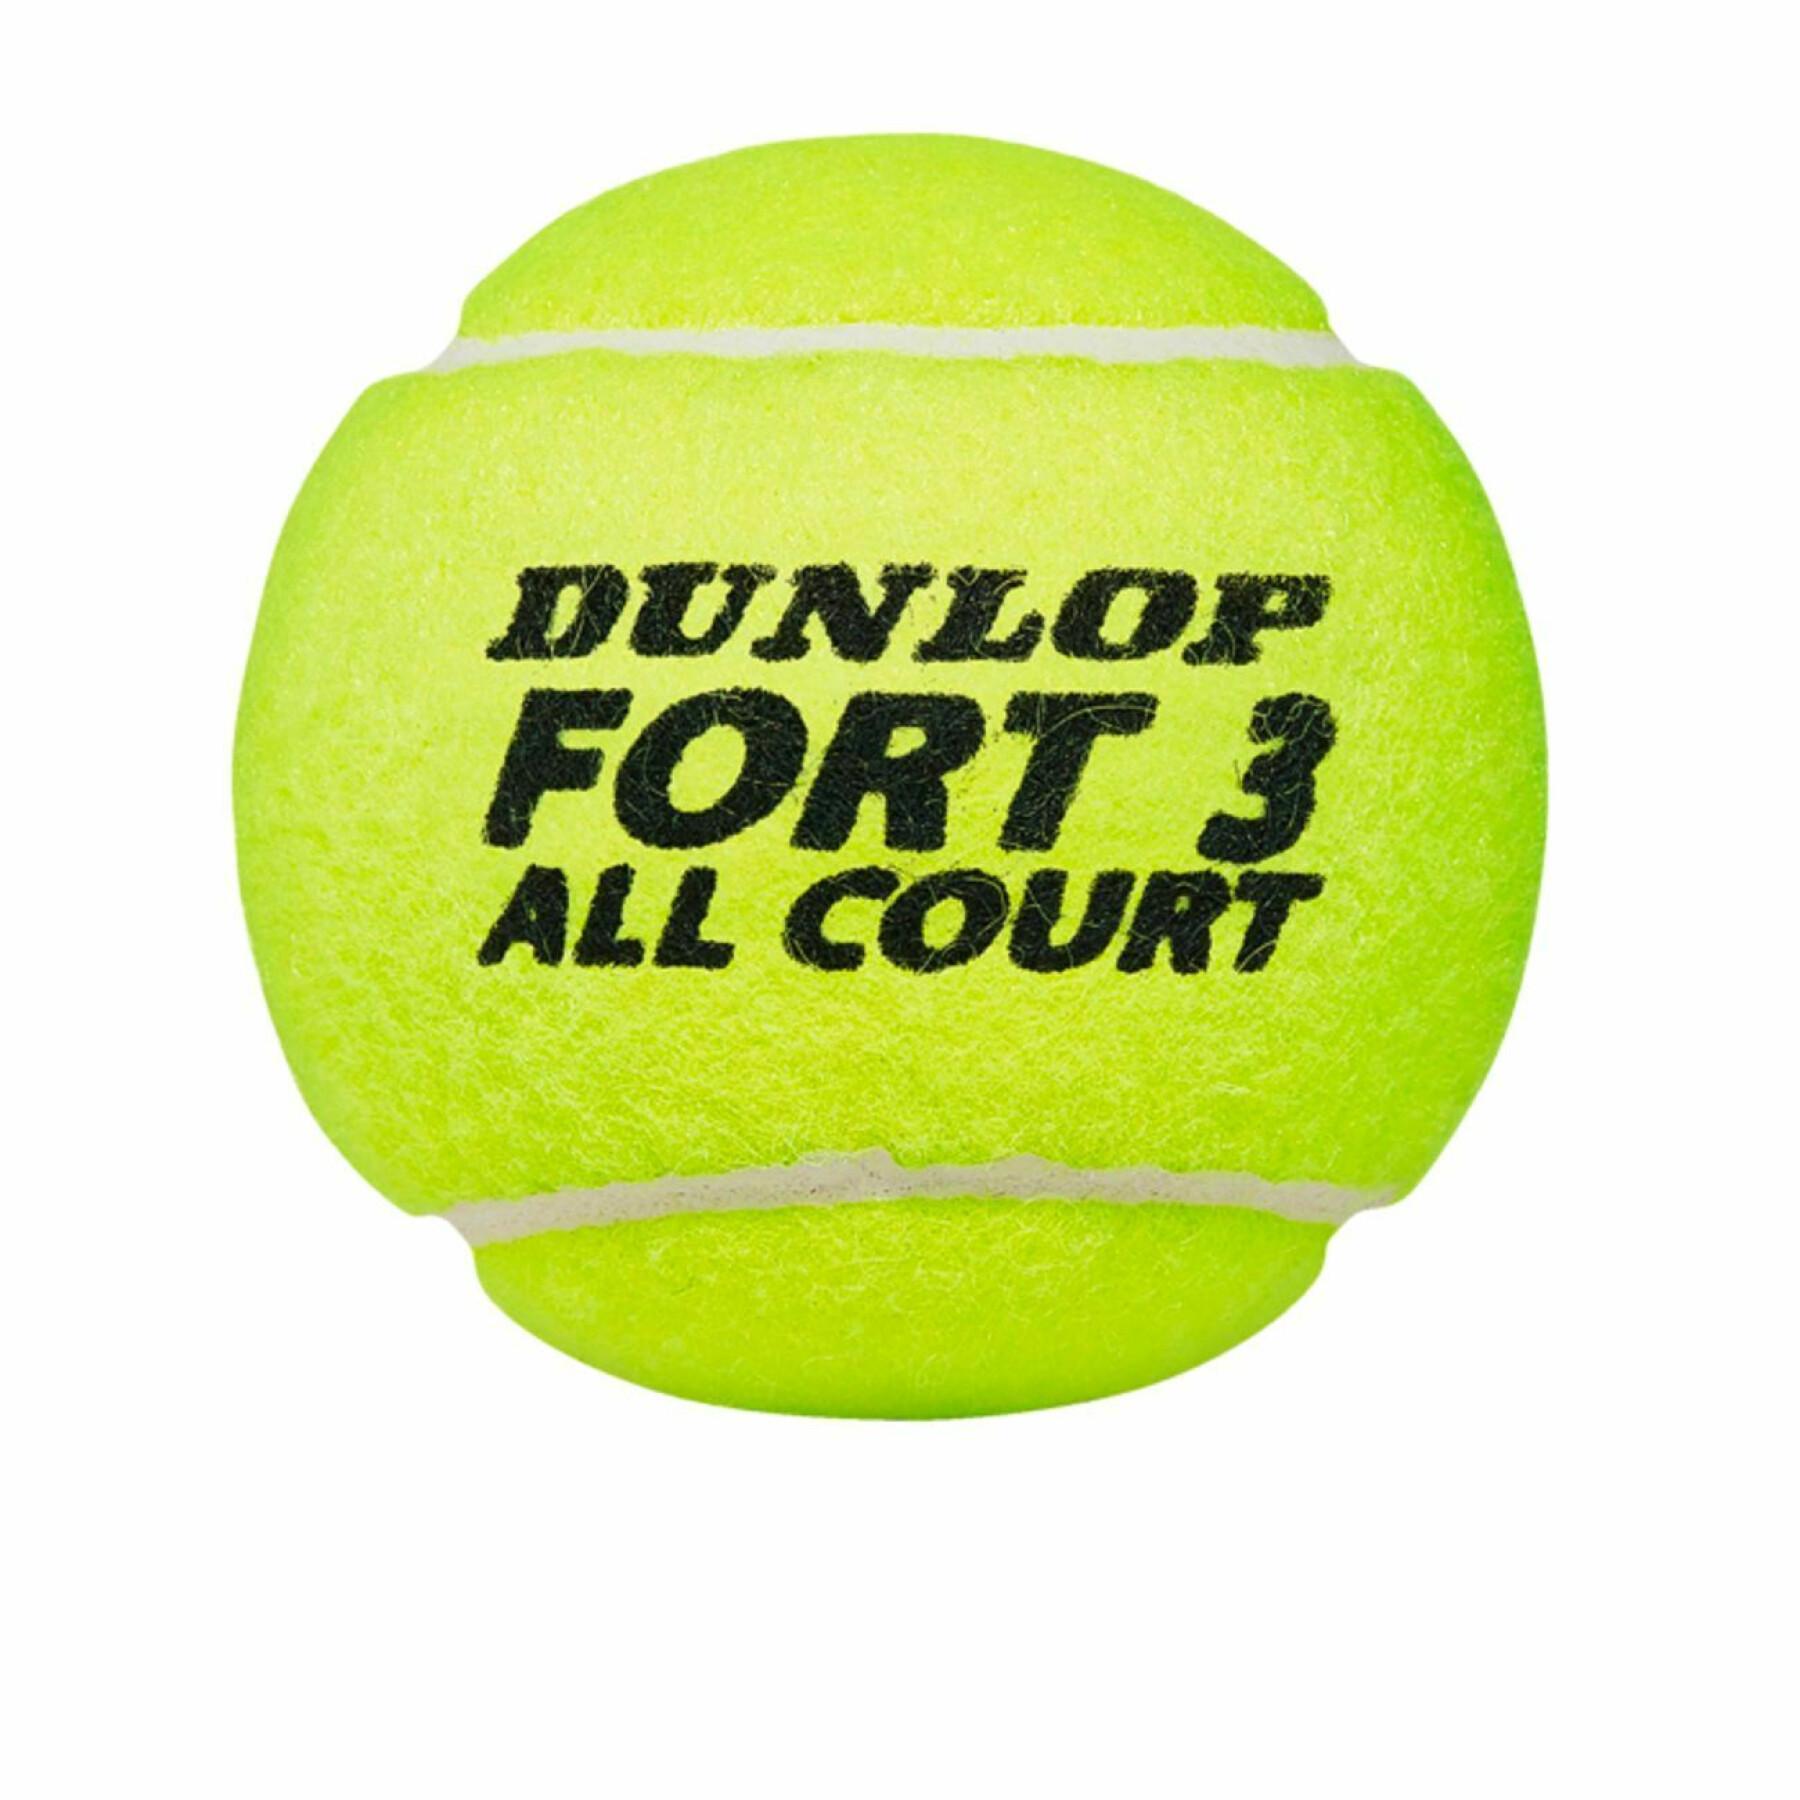 Palle da tennis Dunlop Fort all court ts 4tin